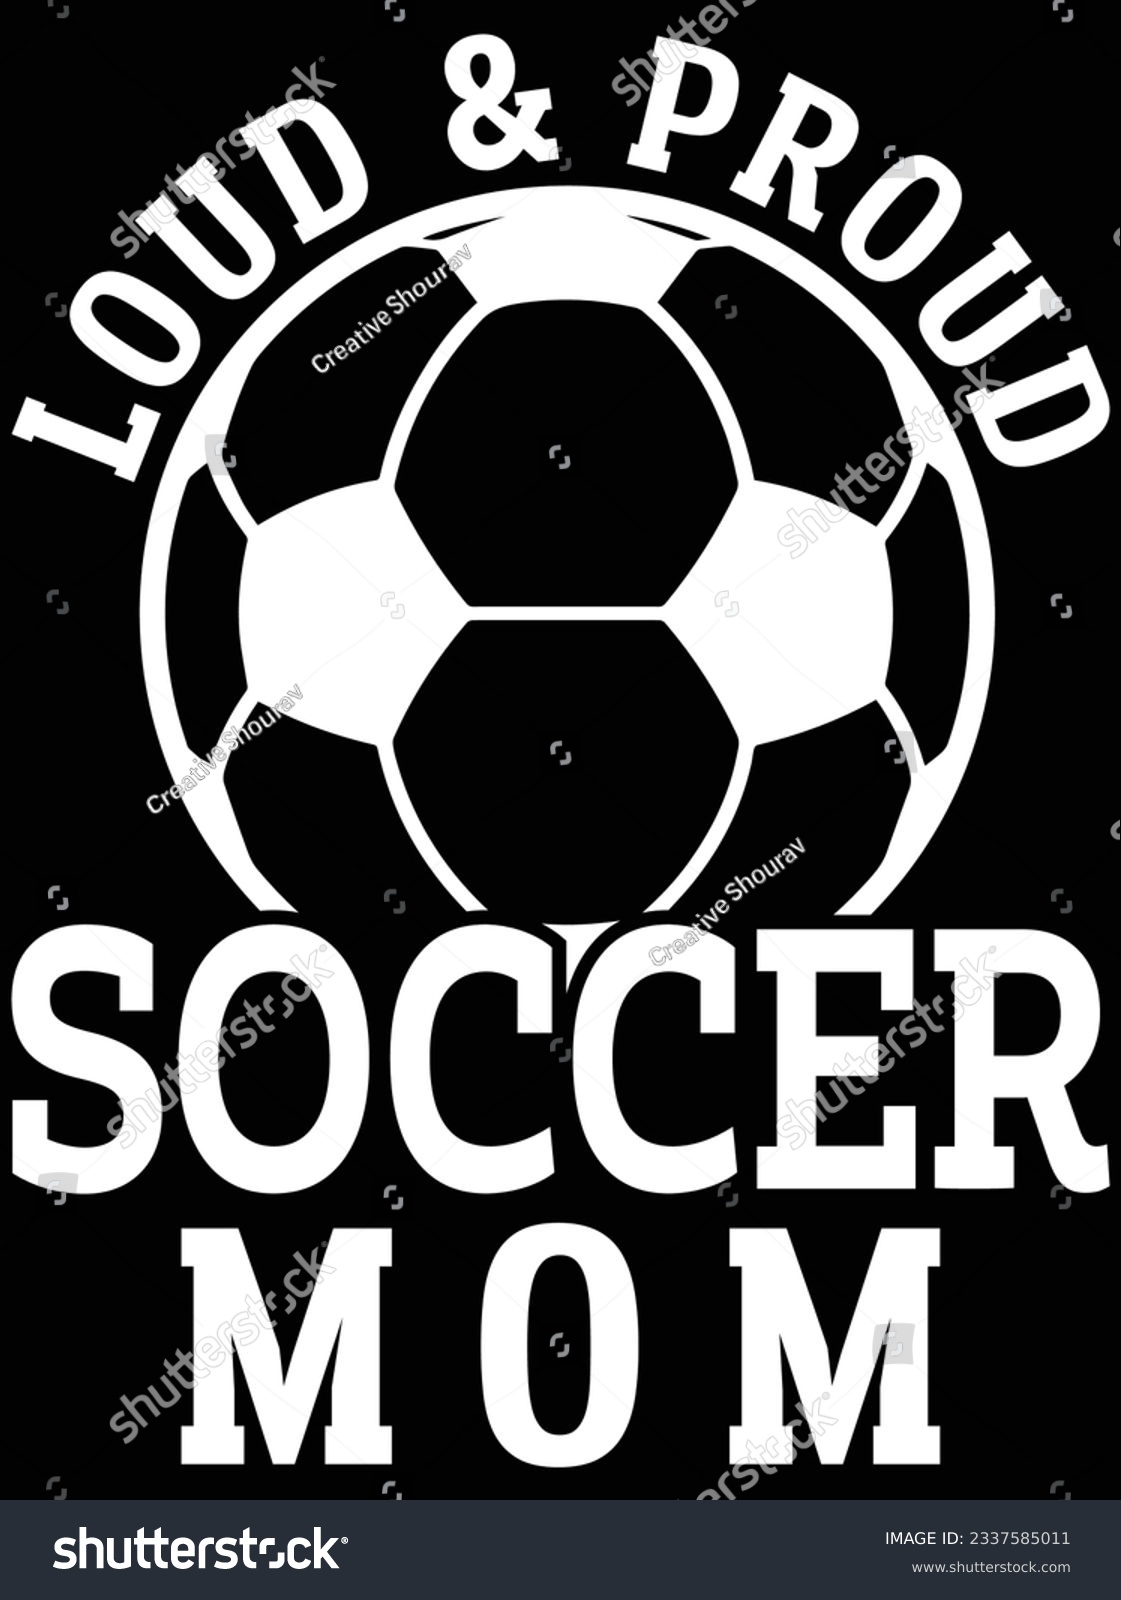 SVG of Loud and proud soccer mom vector art design, eps file. design file for t-shirt. SVG, EPS cuttable design file svg